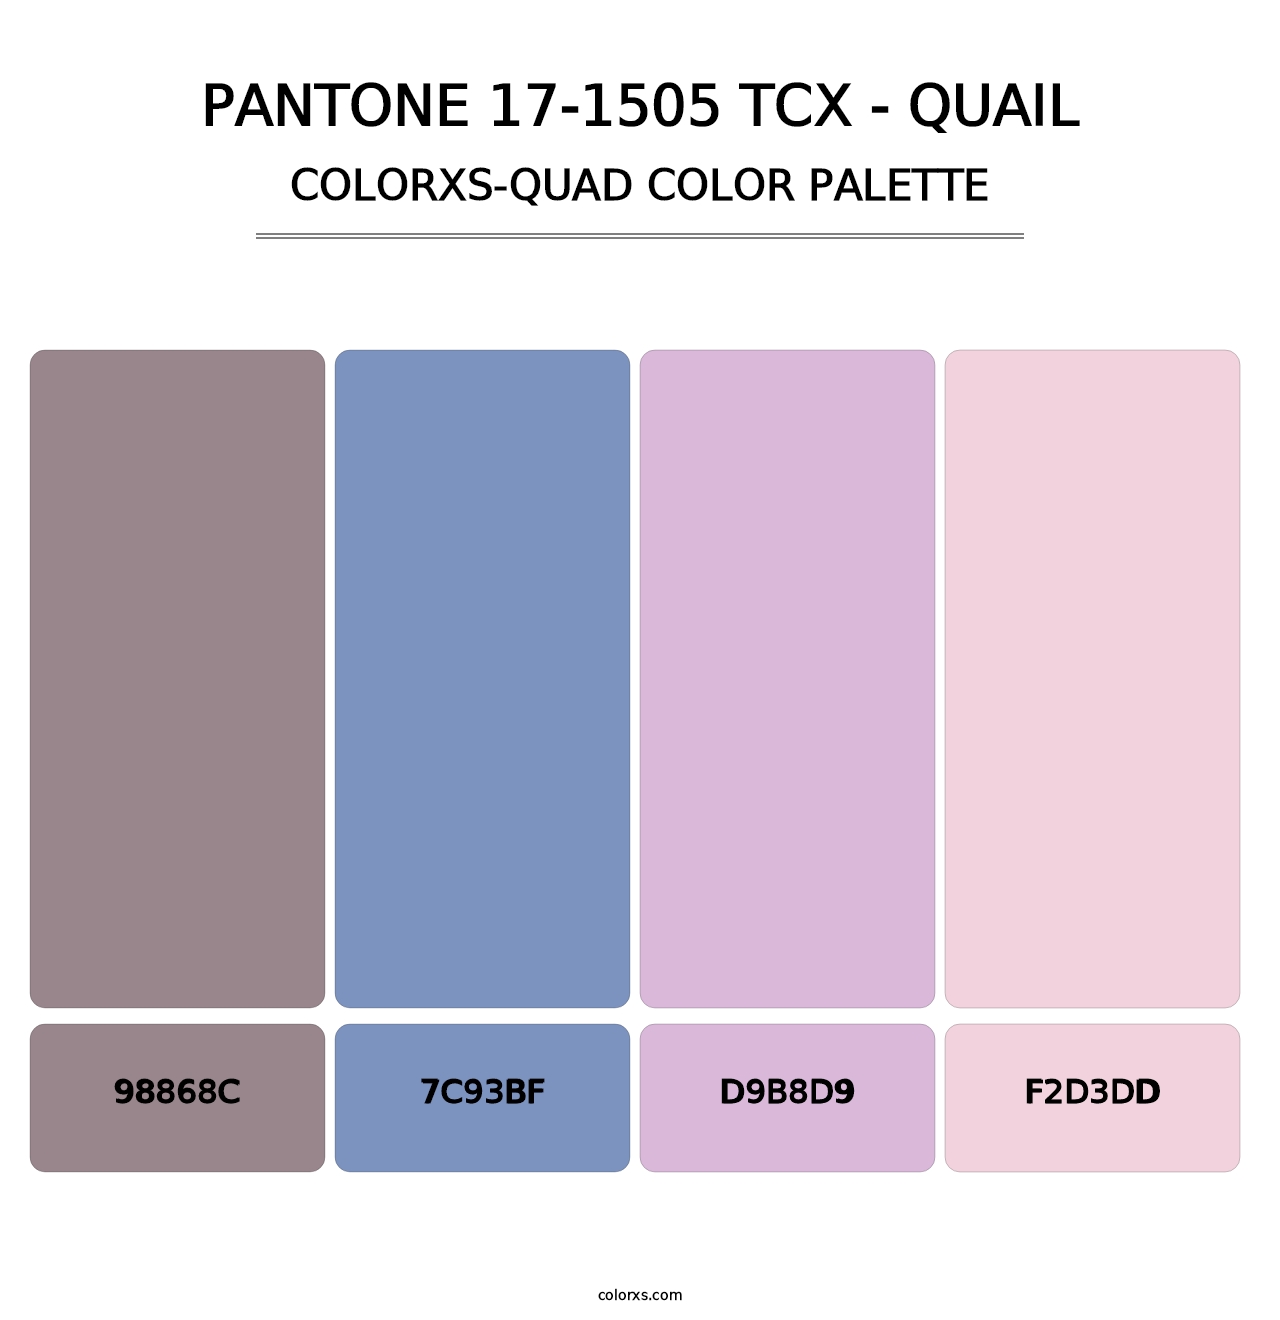 PANTONE 17-1505 TCX - Quail - Colorxs Quad Palette